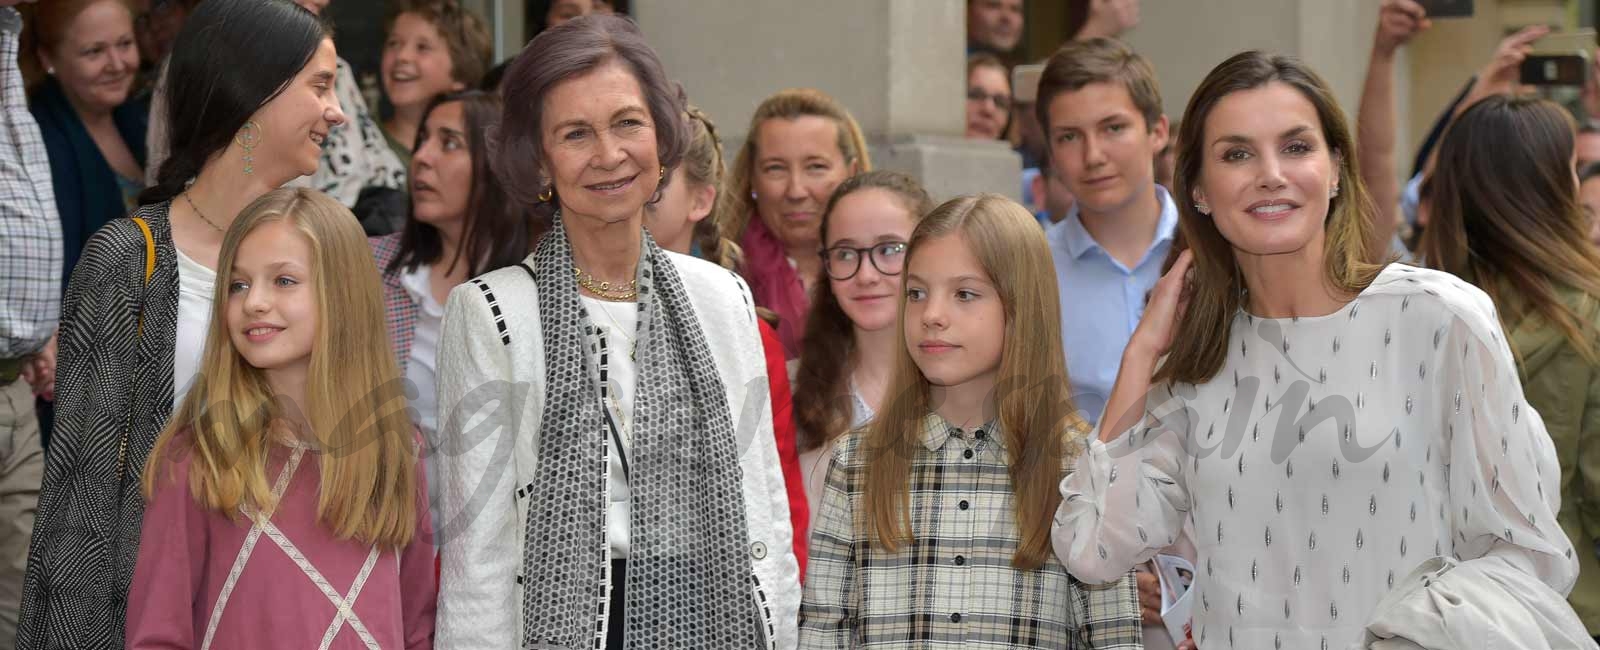 La reina Letizia, la reina Sofía, la princesa Leonor y la infanta Sofía: “tarde de chicas” en el teatro